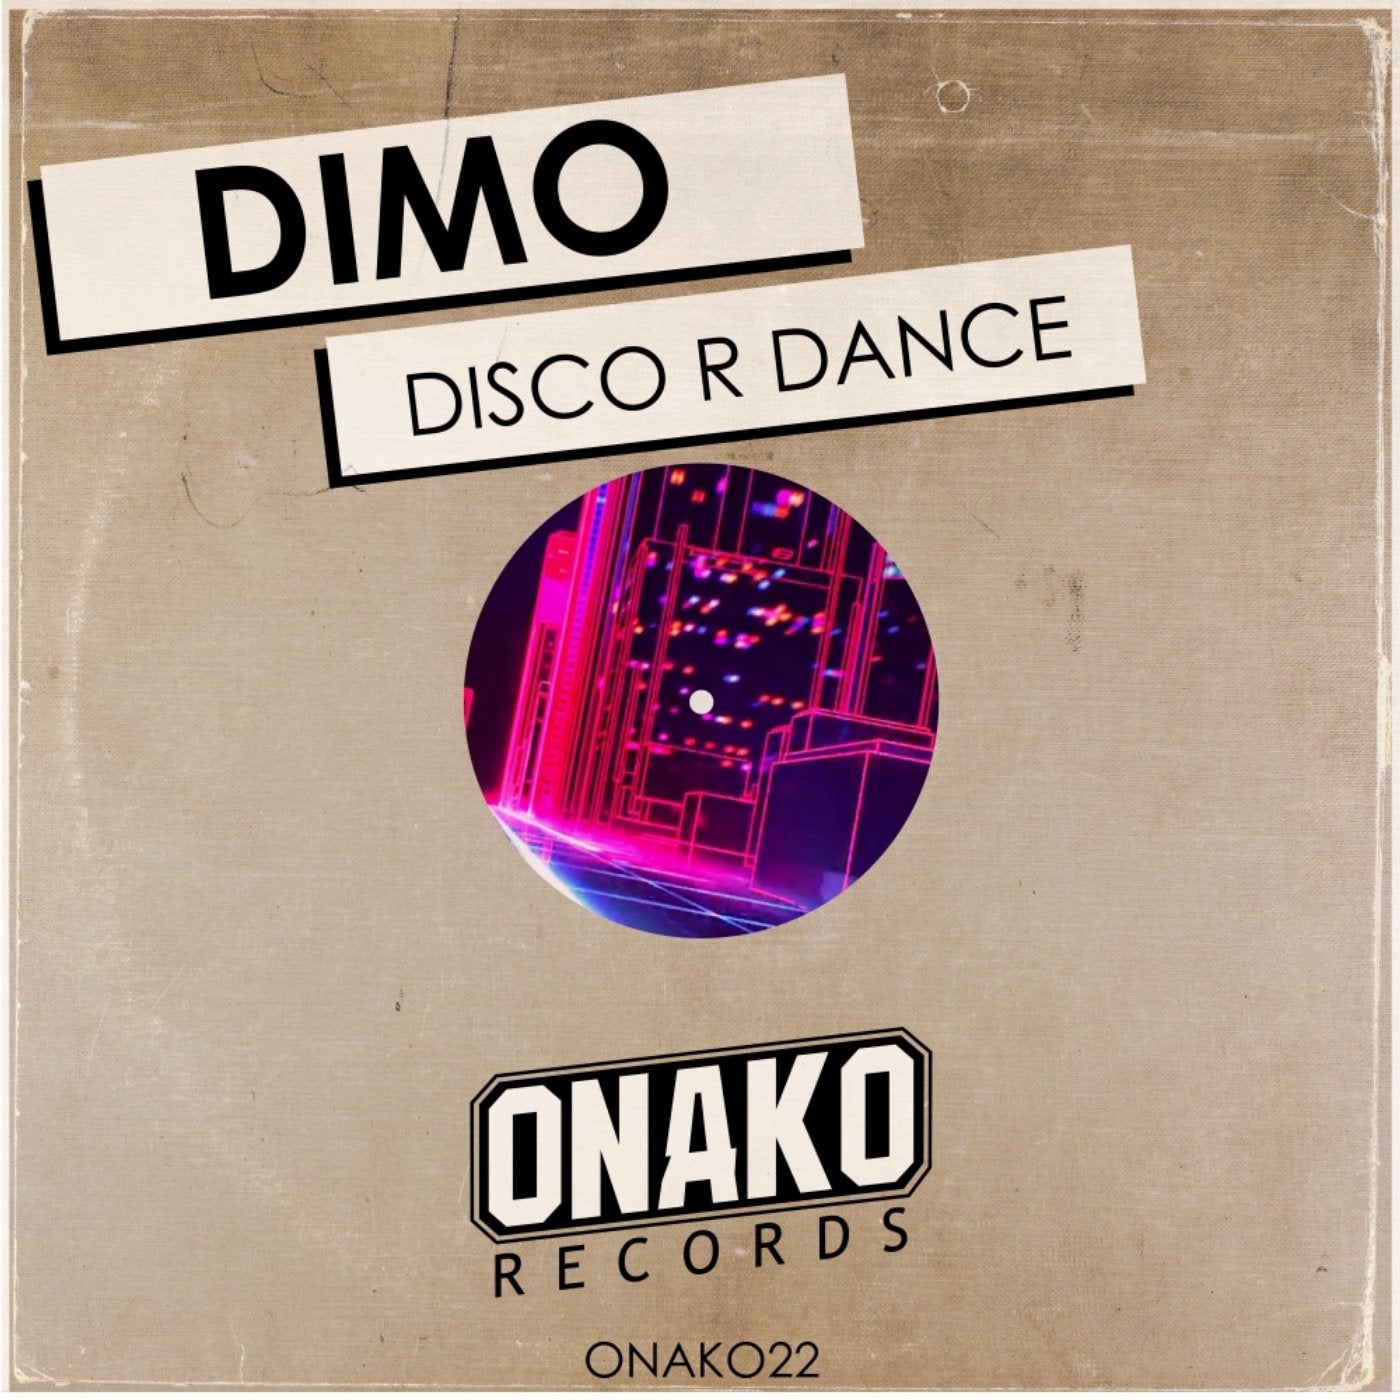 Disco R Dance